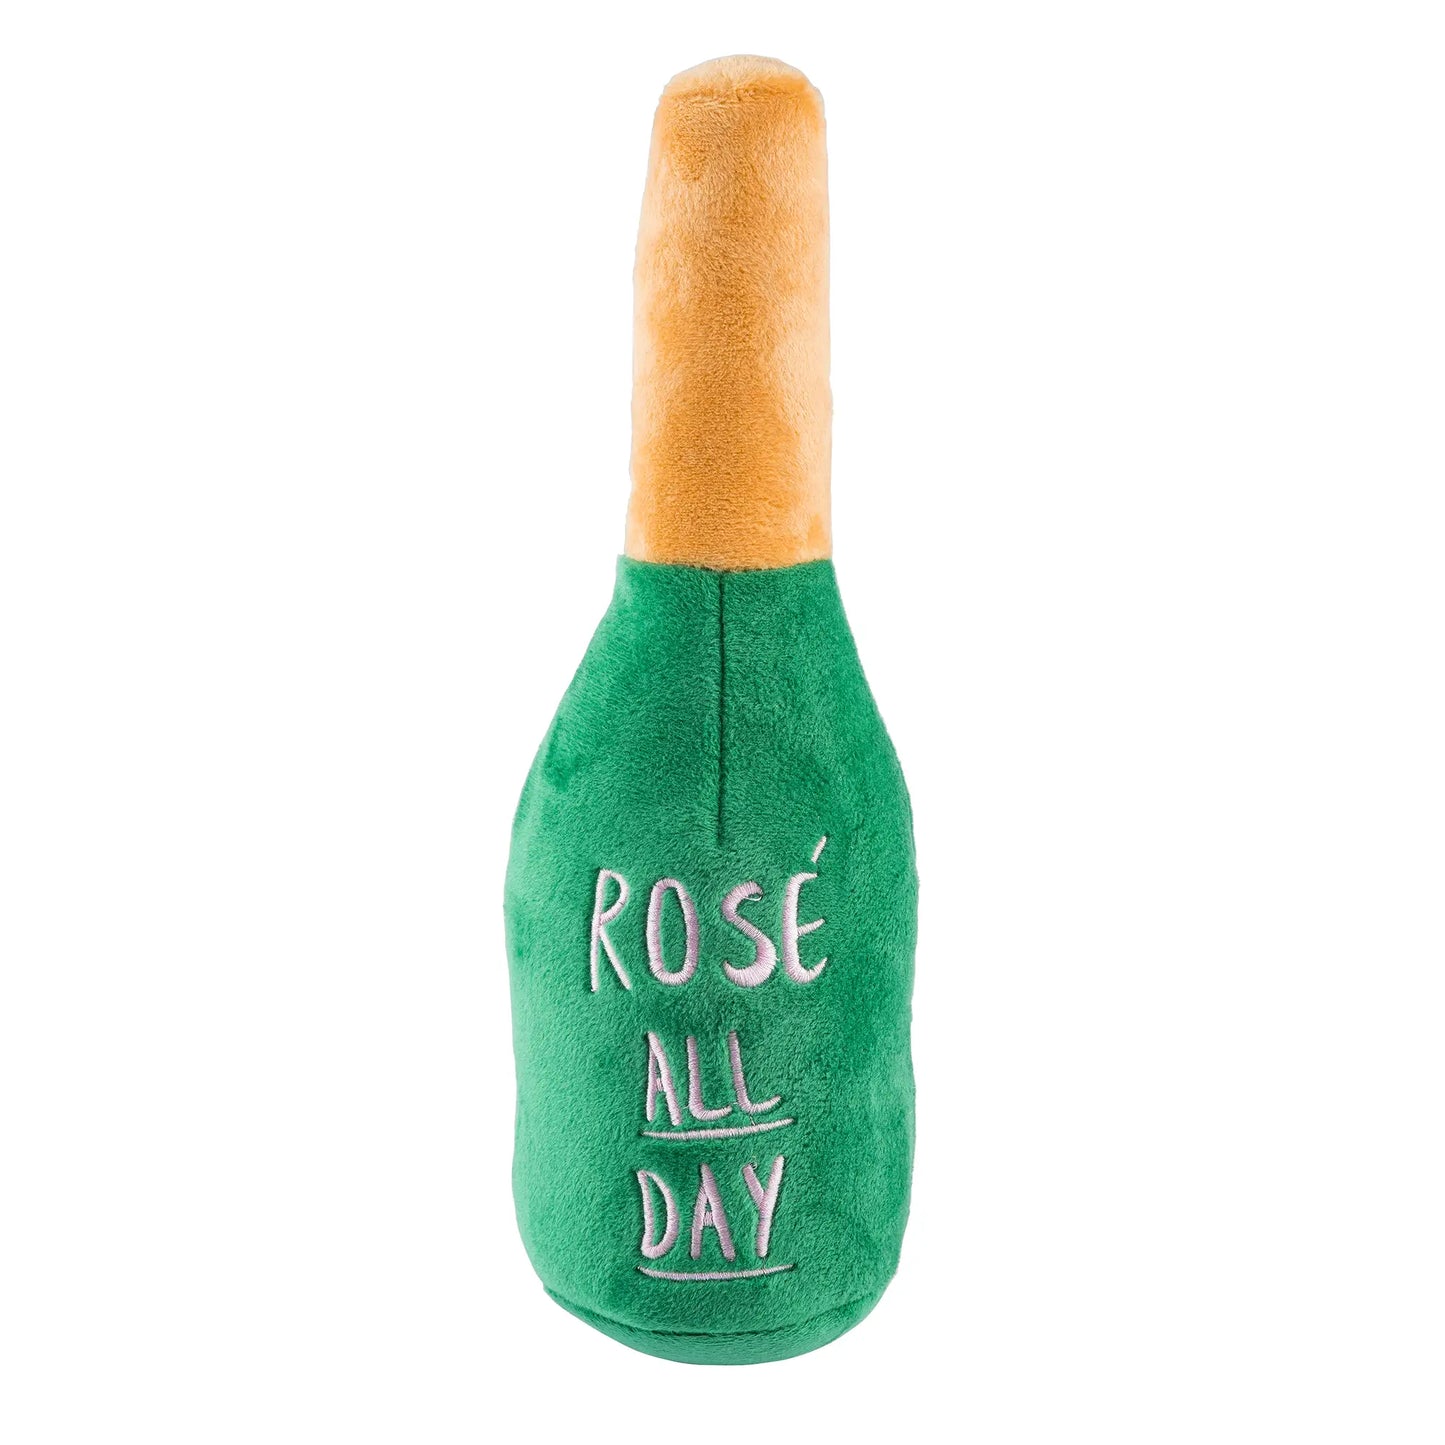 Woof Clicquot Rosé Champagne Bottle